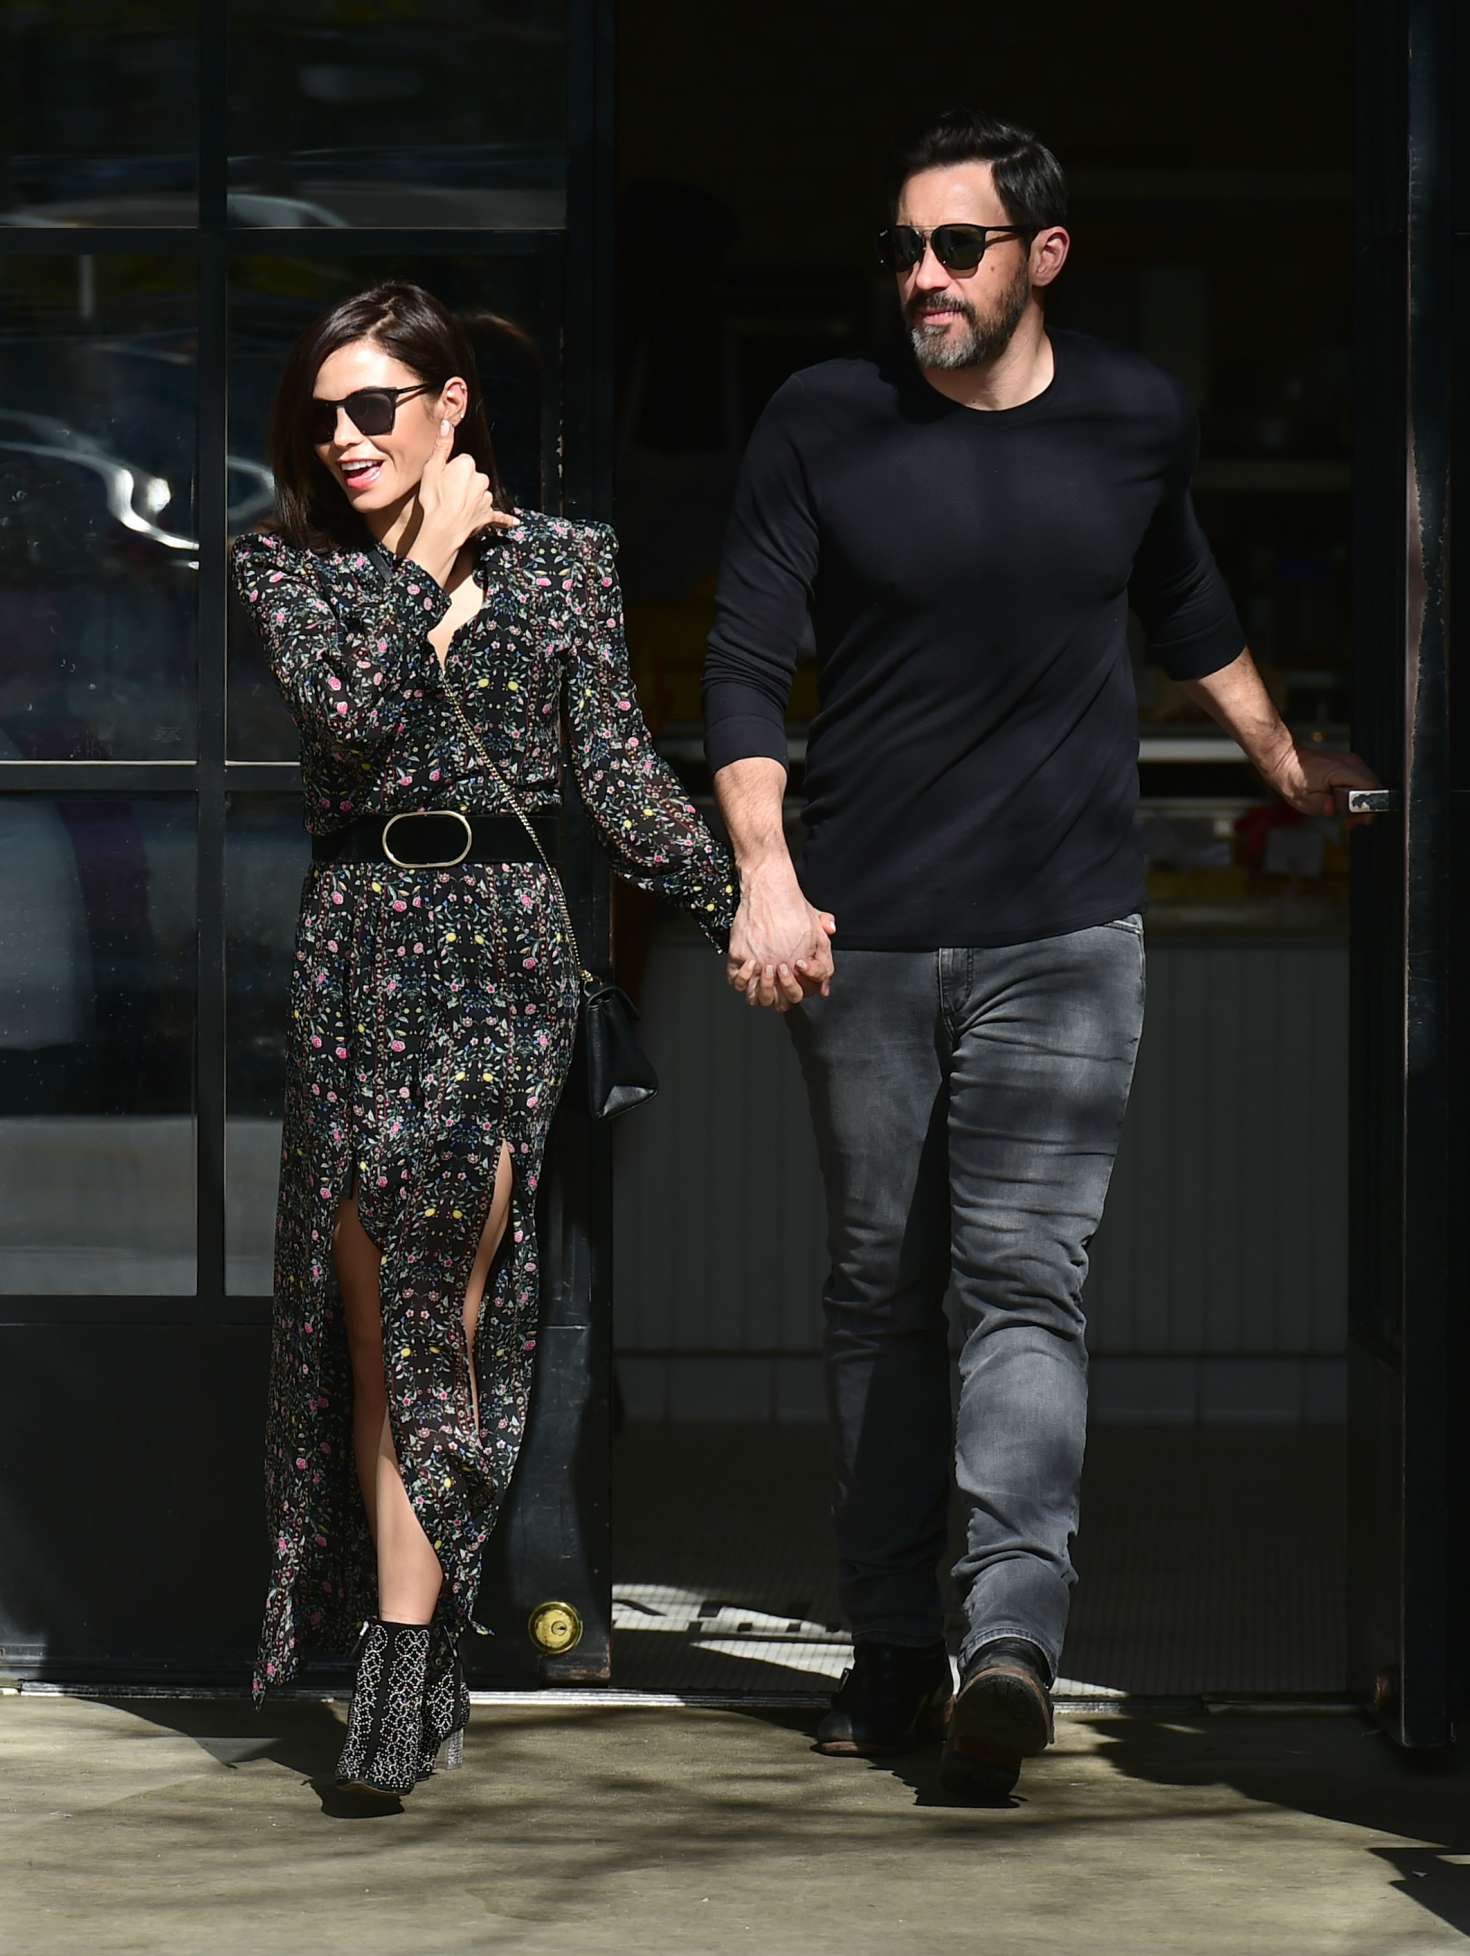 Jenna Dewan and her boyfriend Steve Kazee â€“ Out in Los Angeles